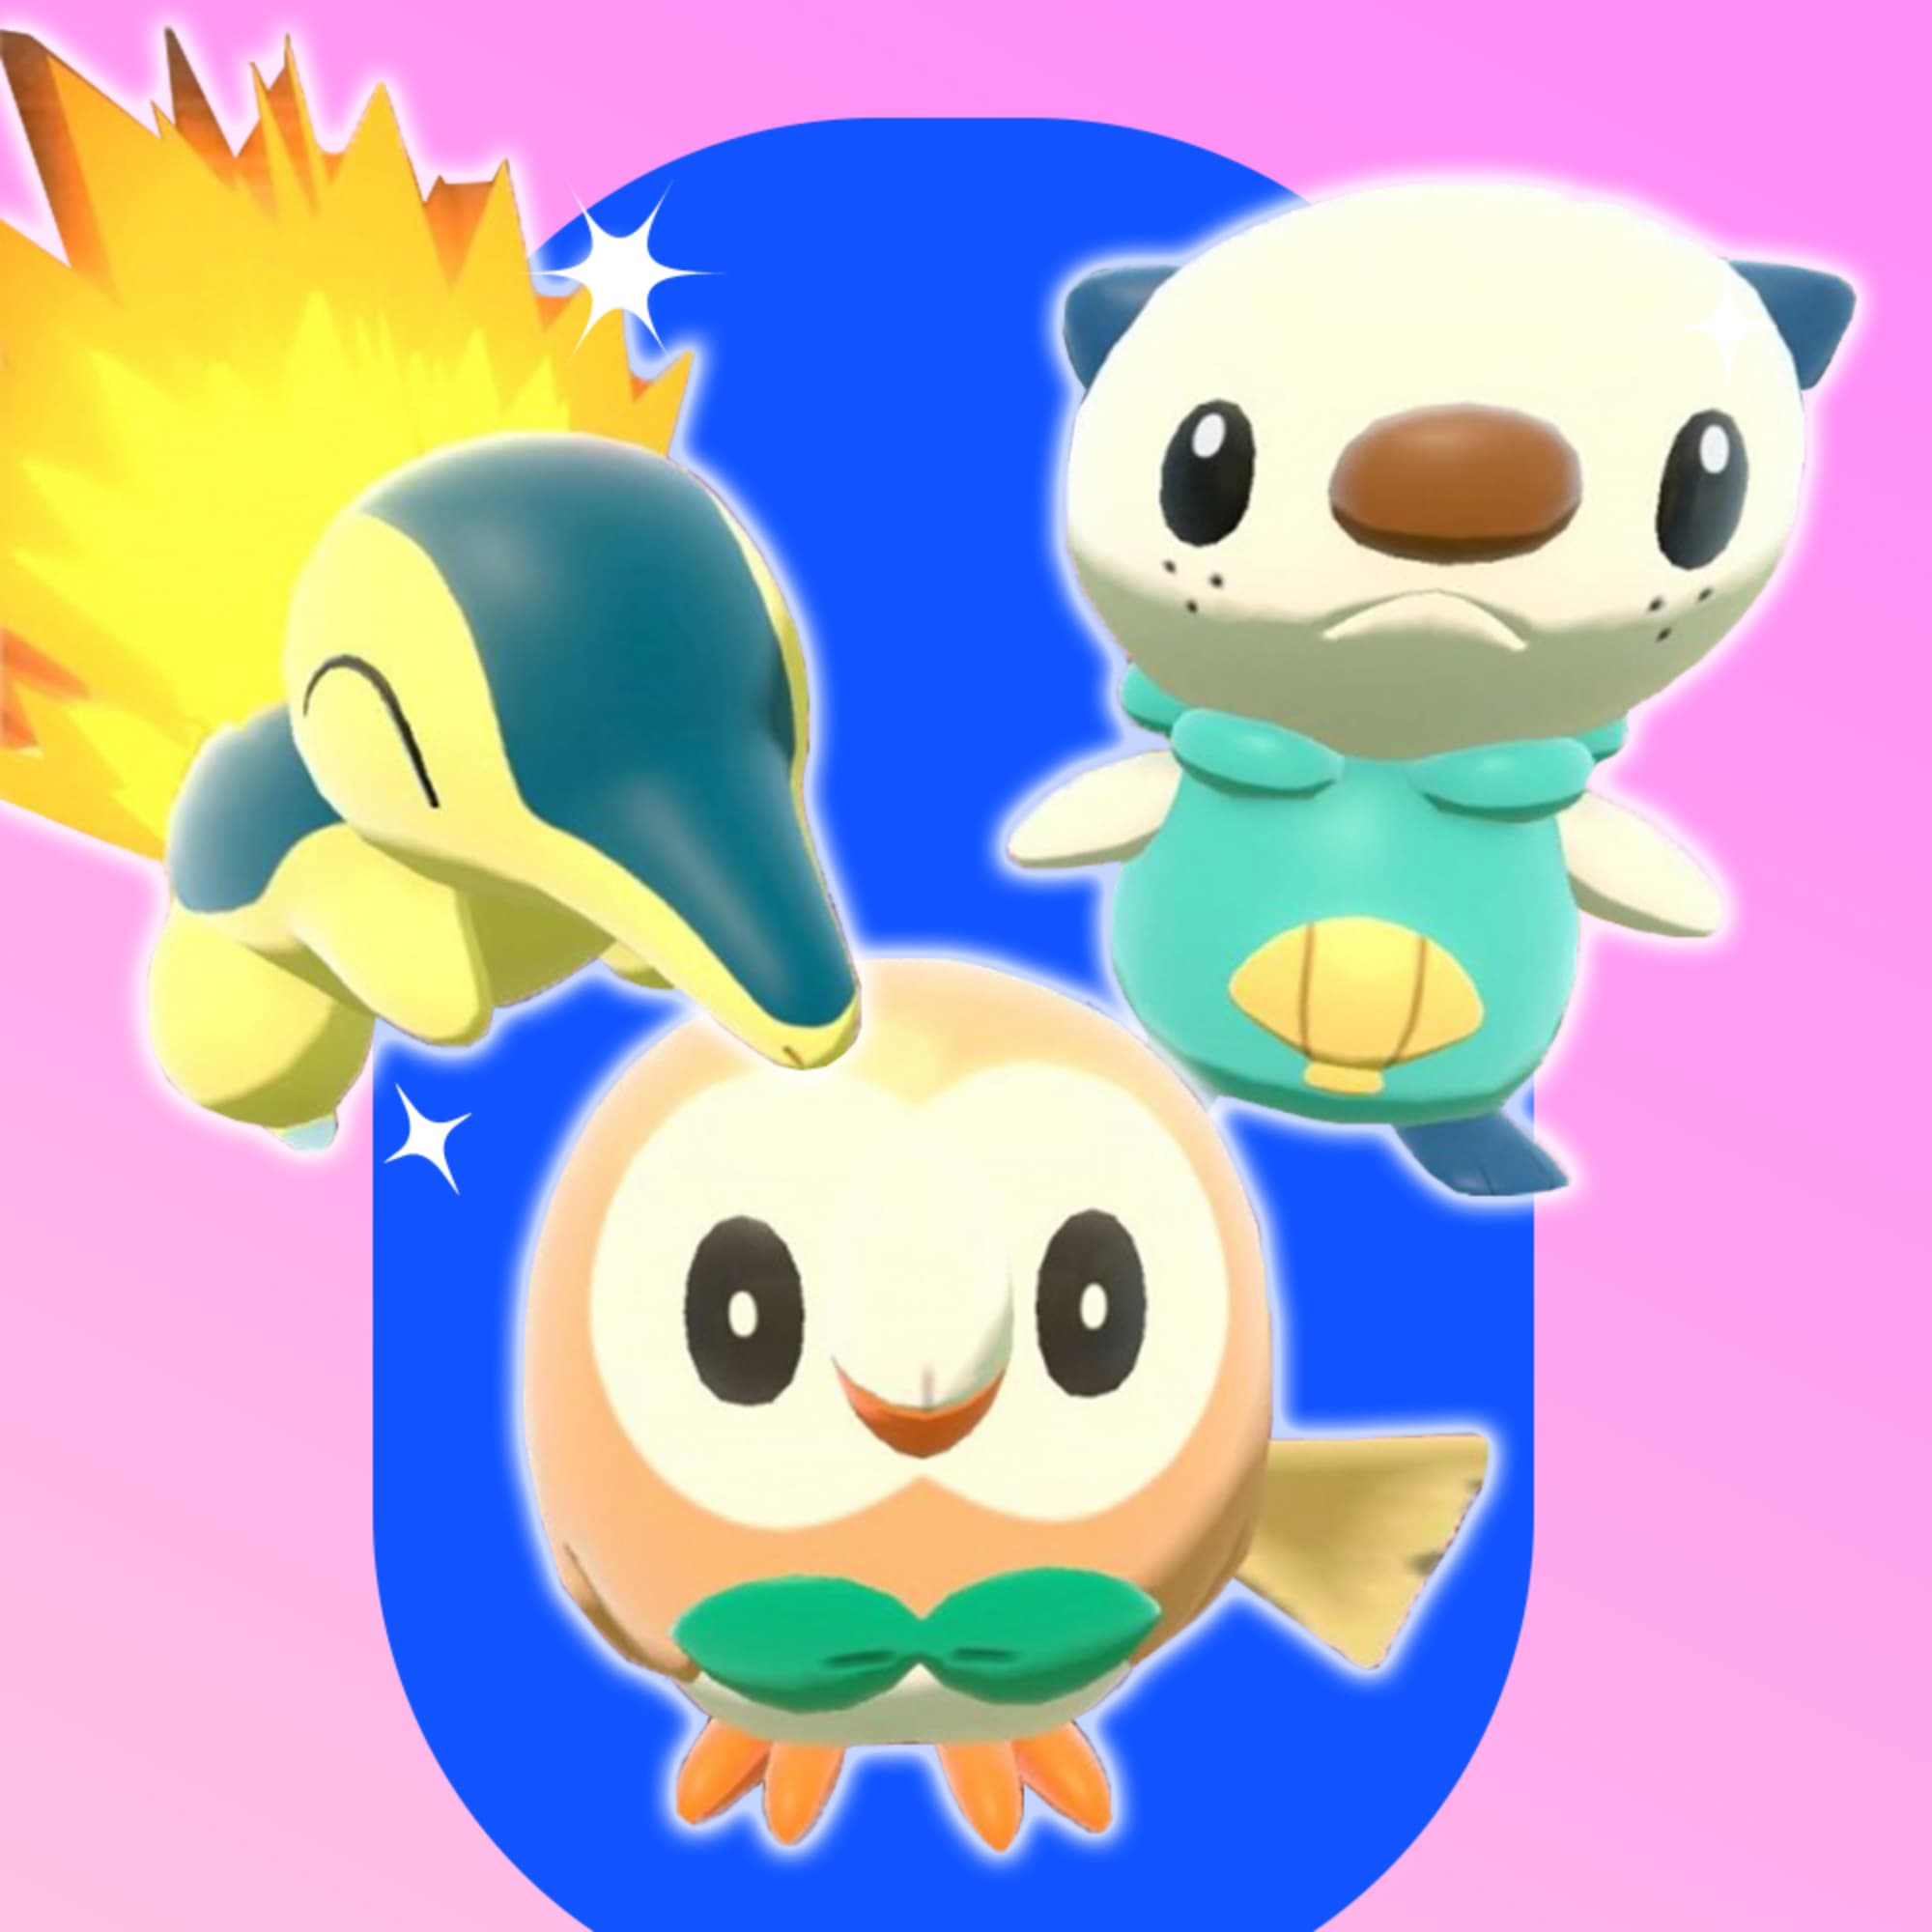 Cyndaquil, Rowlet and Oshawott, the starter Pokémon in Pokémon Legends: Arceus.